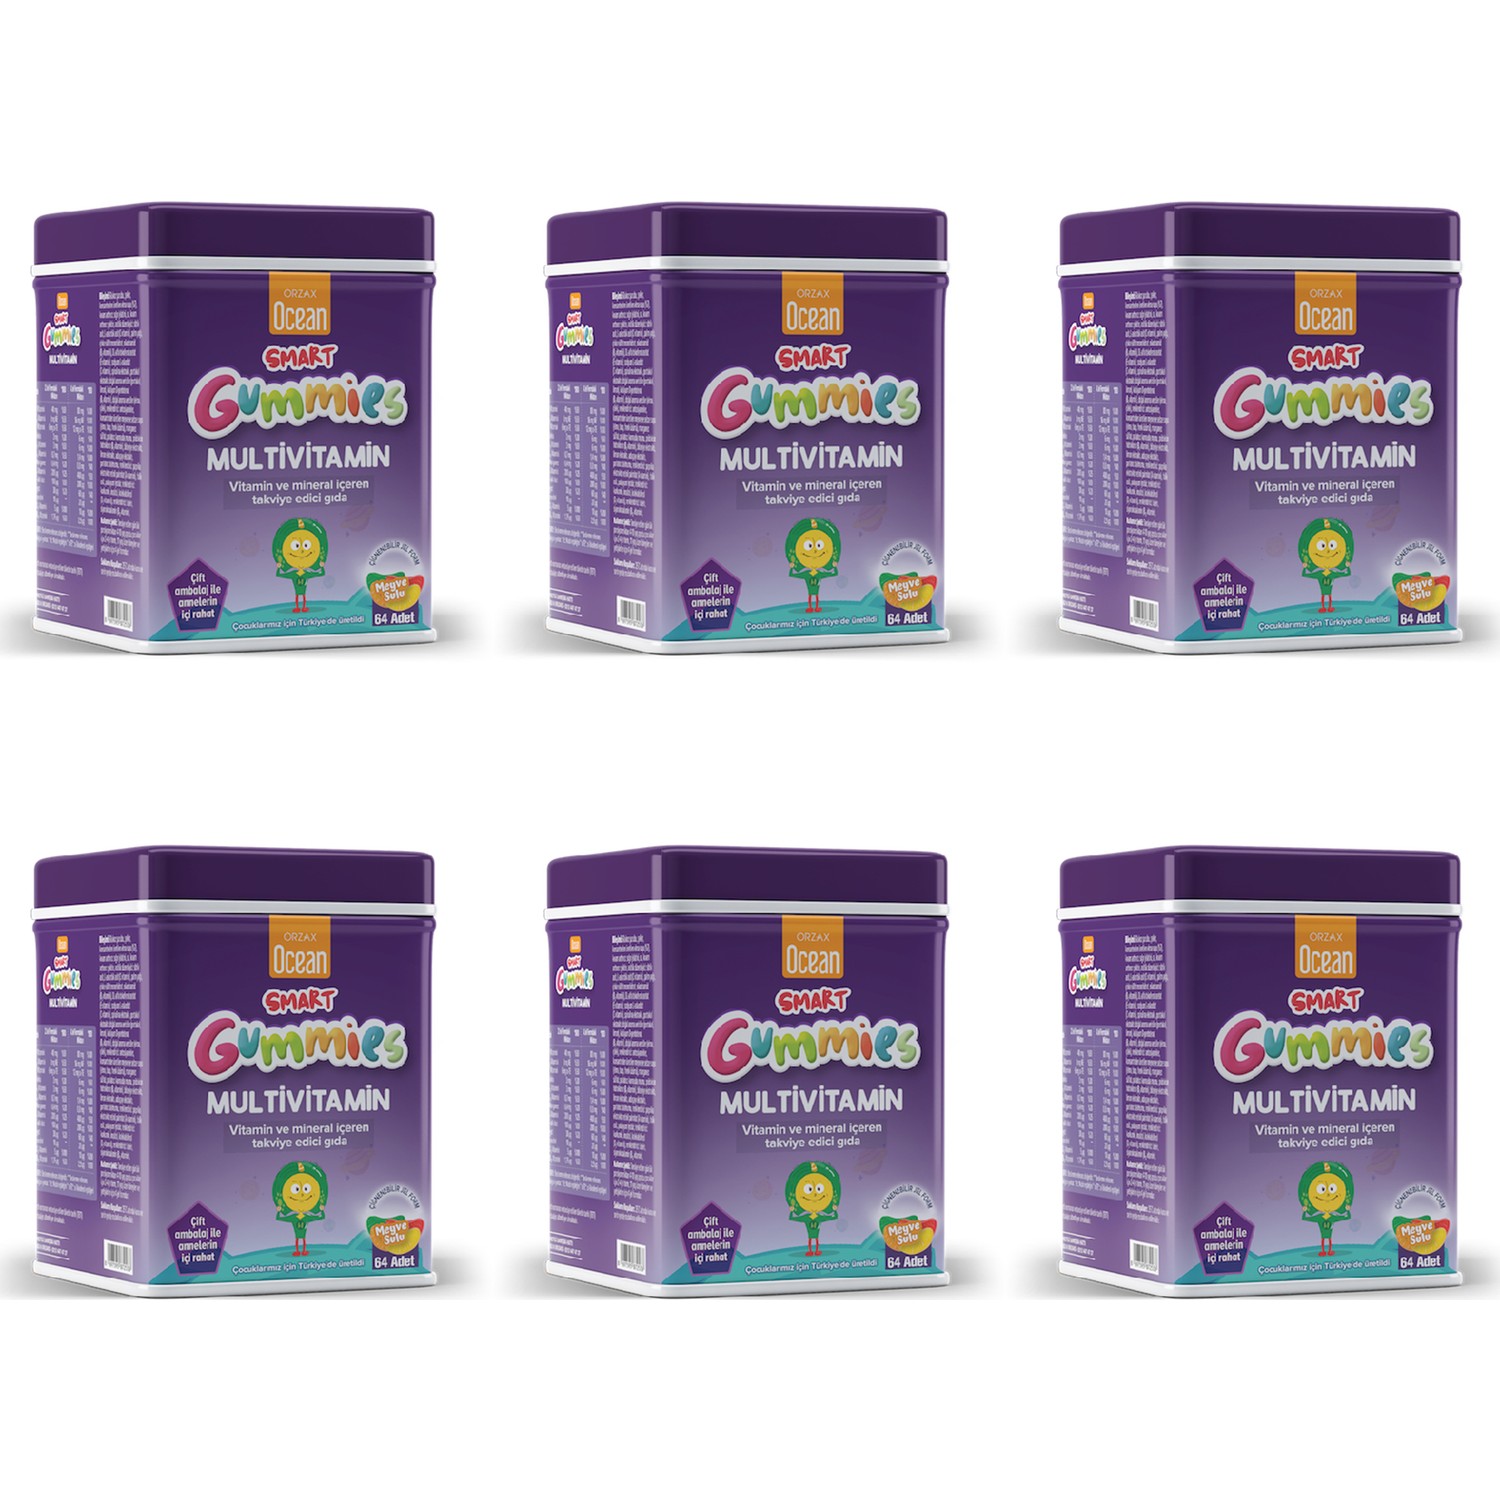 Мультивитамины Orzax Ocean Smart Gummies, 6 упаковок по 64 таблетки